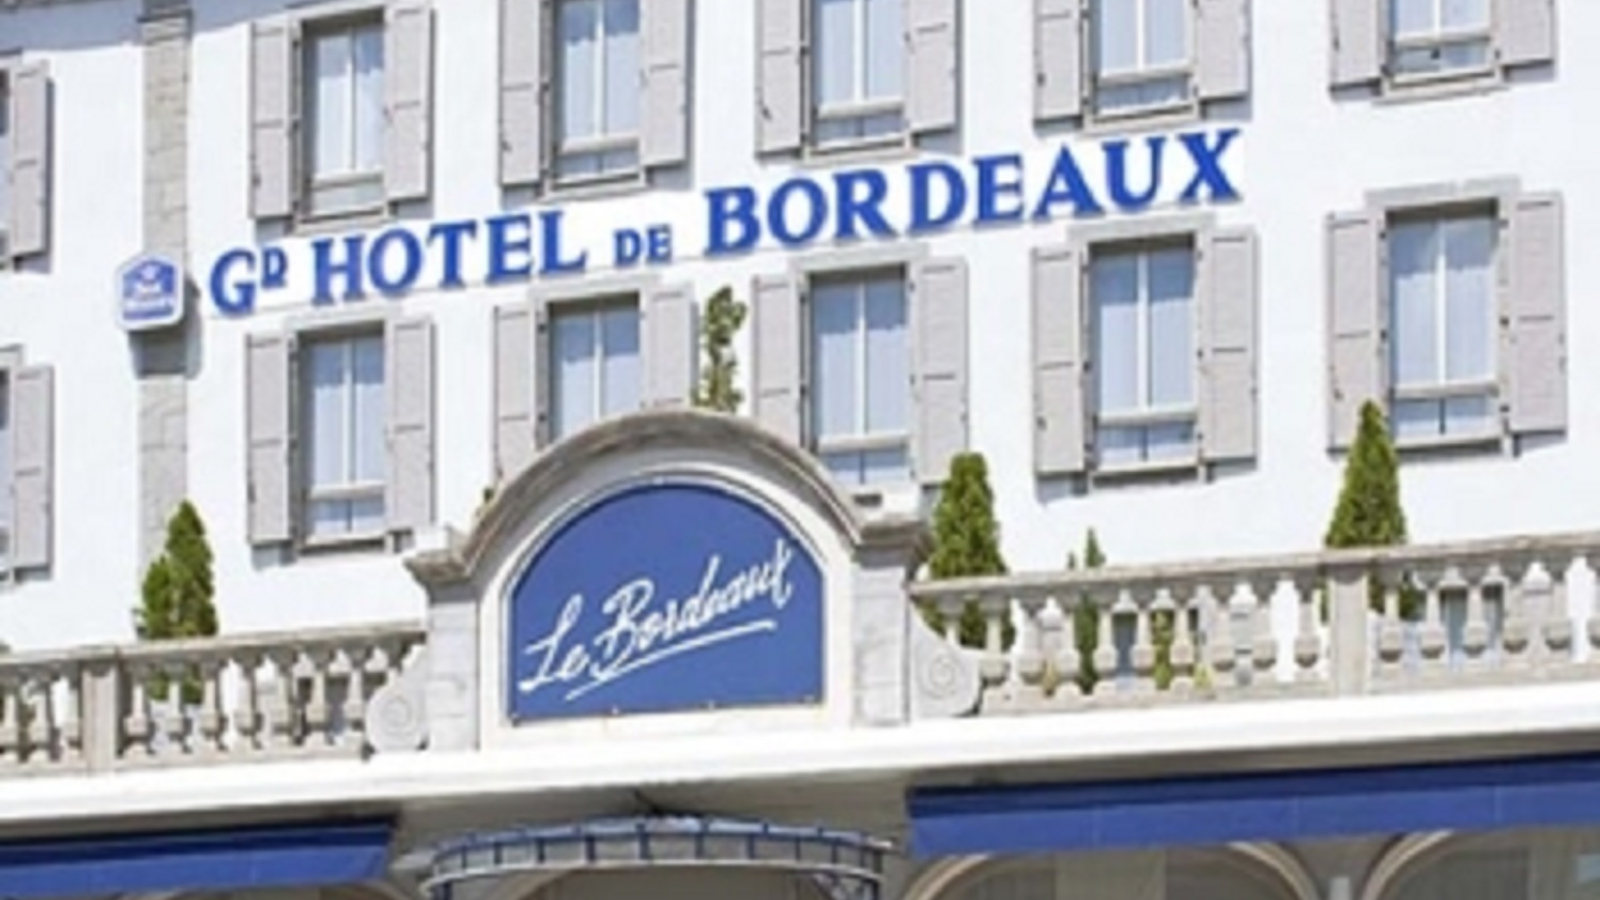 Grand Hôtel de Bordeaux